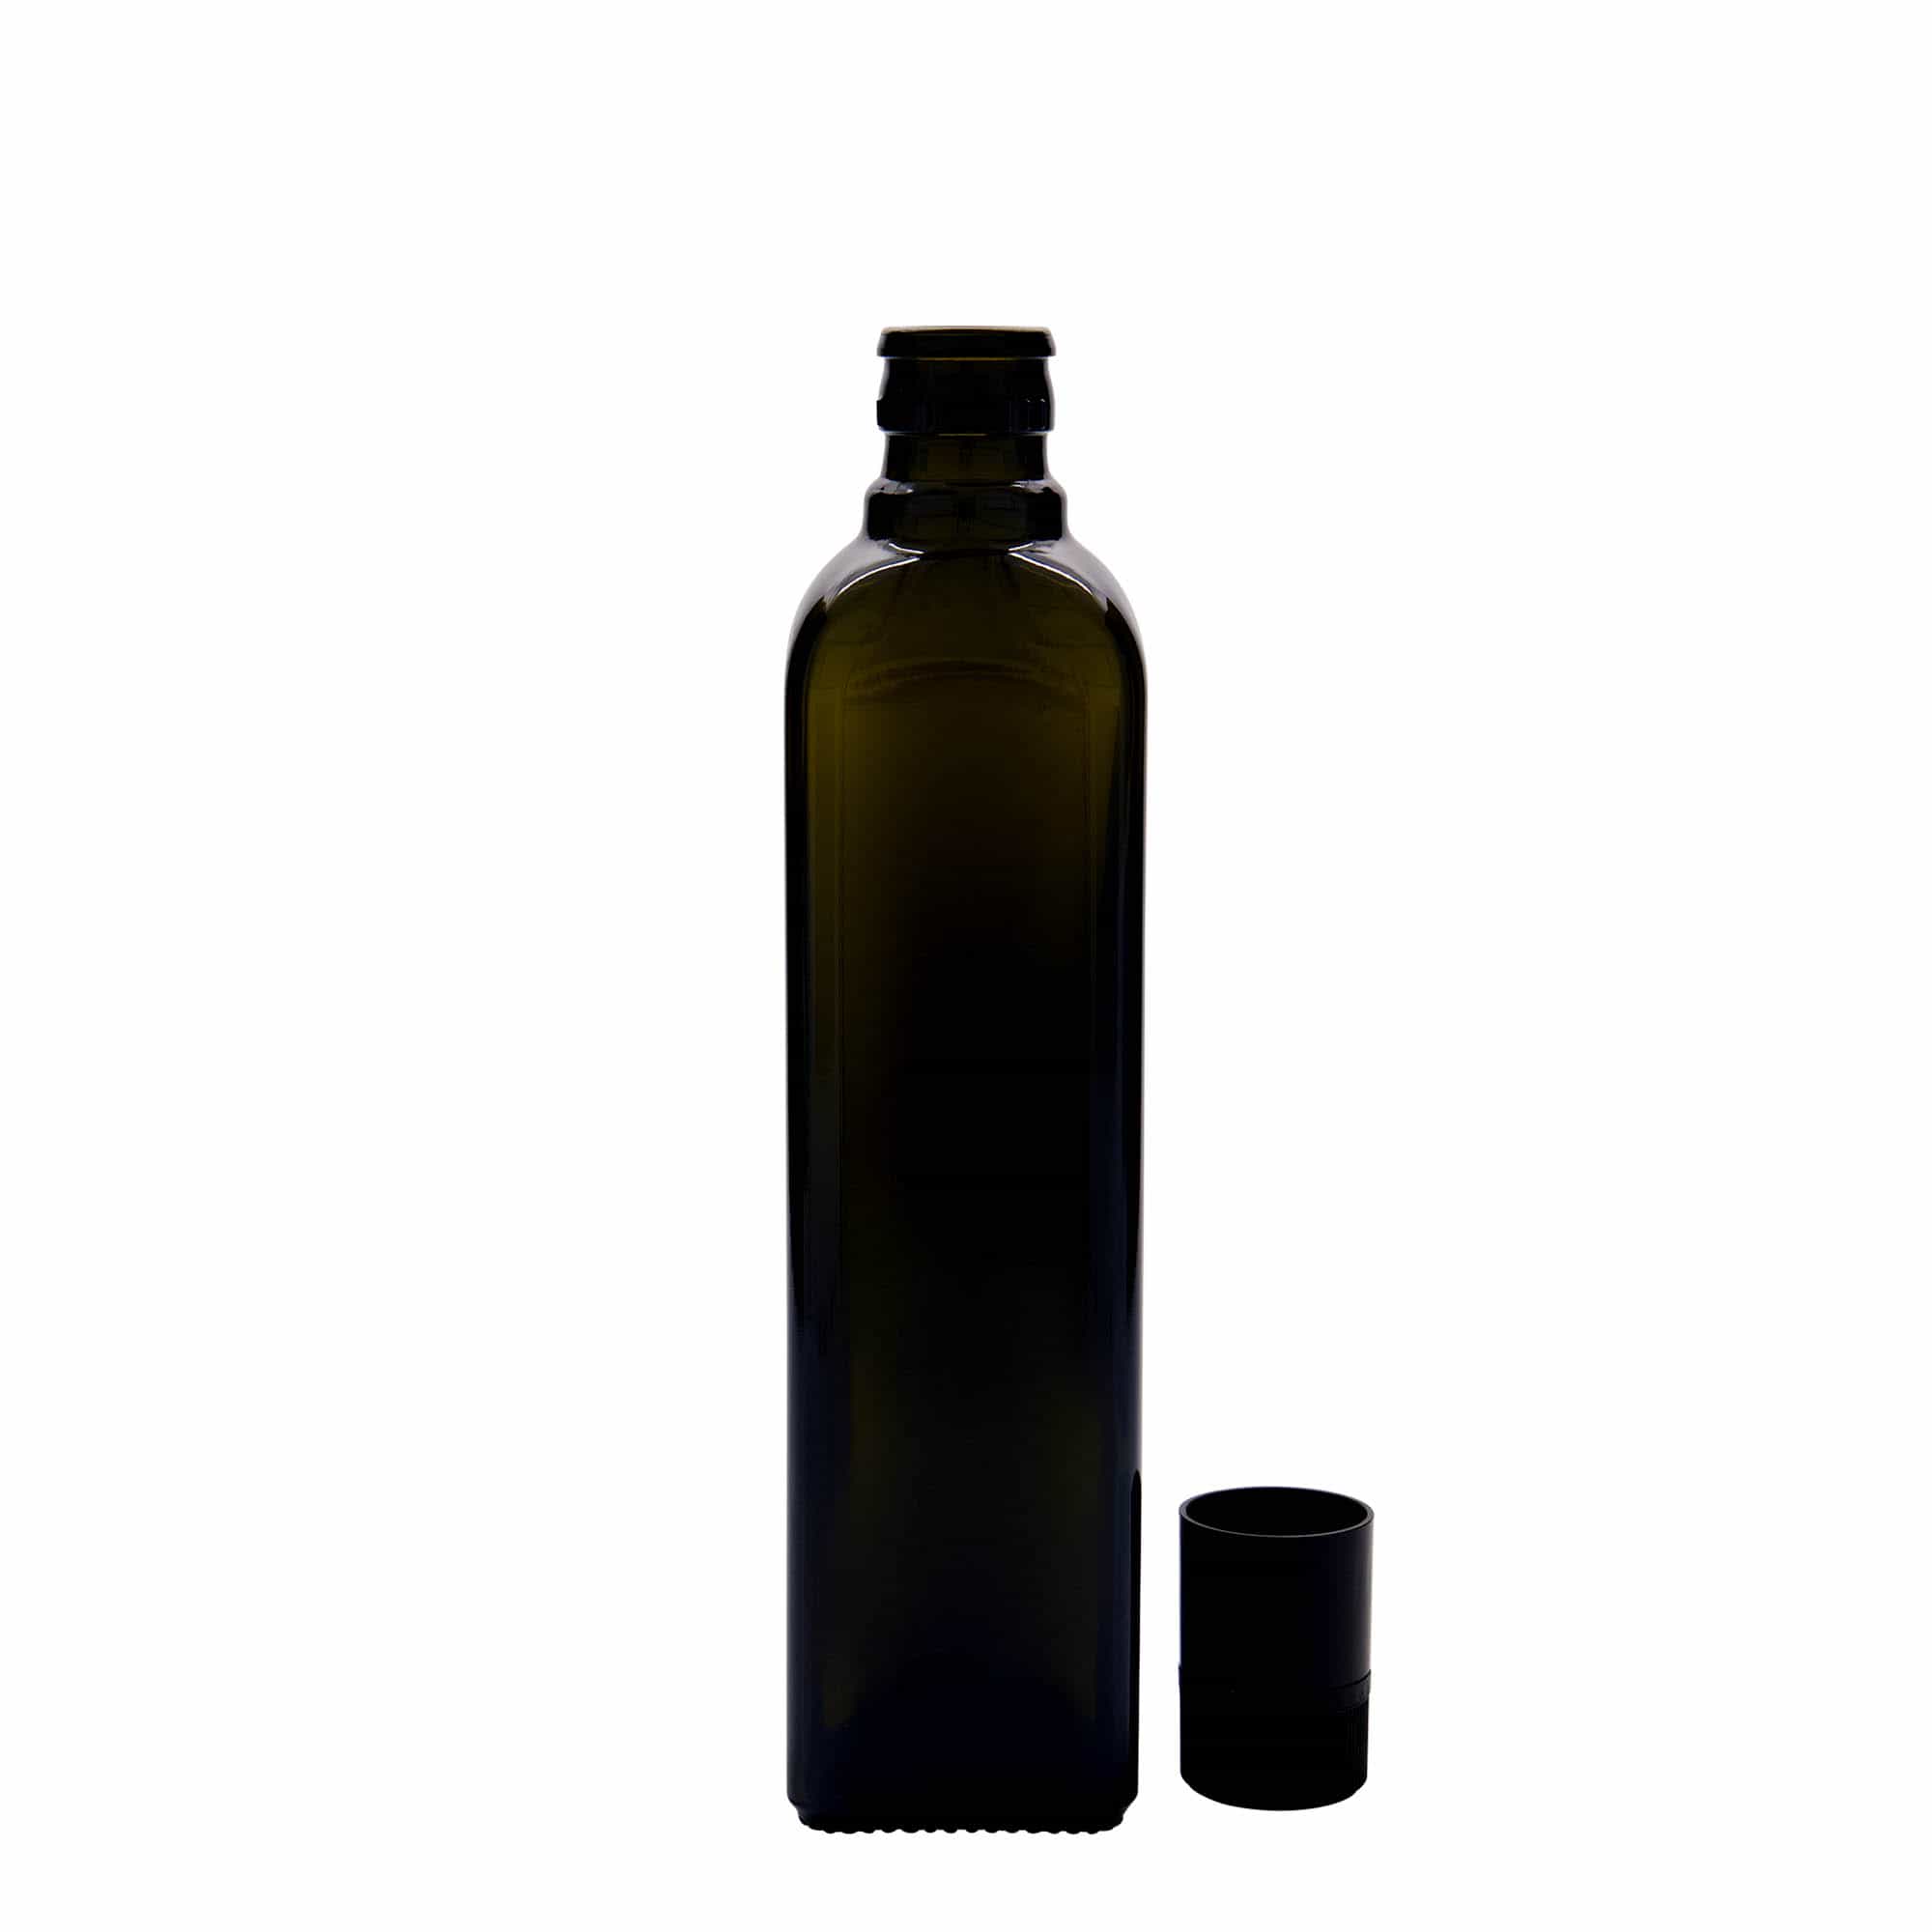 Lahev na ocet/olej 500 ml 'Quadra', sklo, čtvercová, starožitná zelená, ústí: DOP